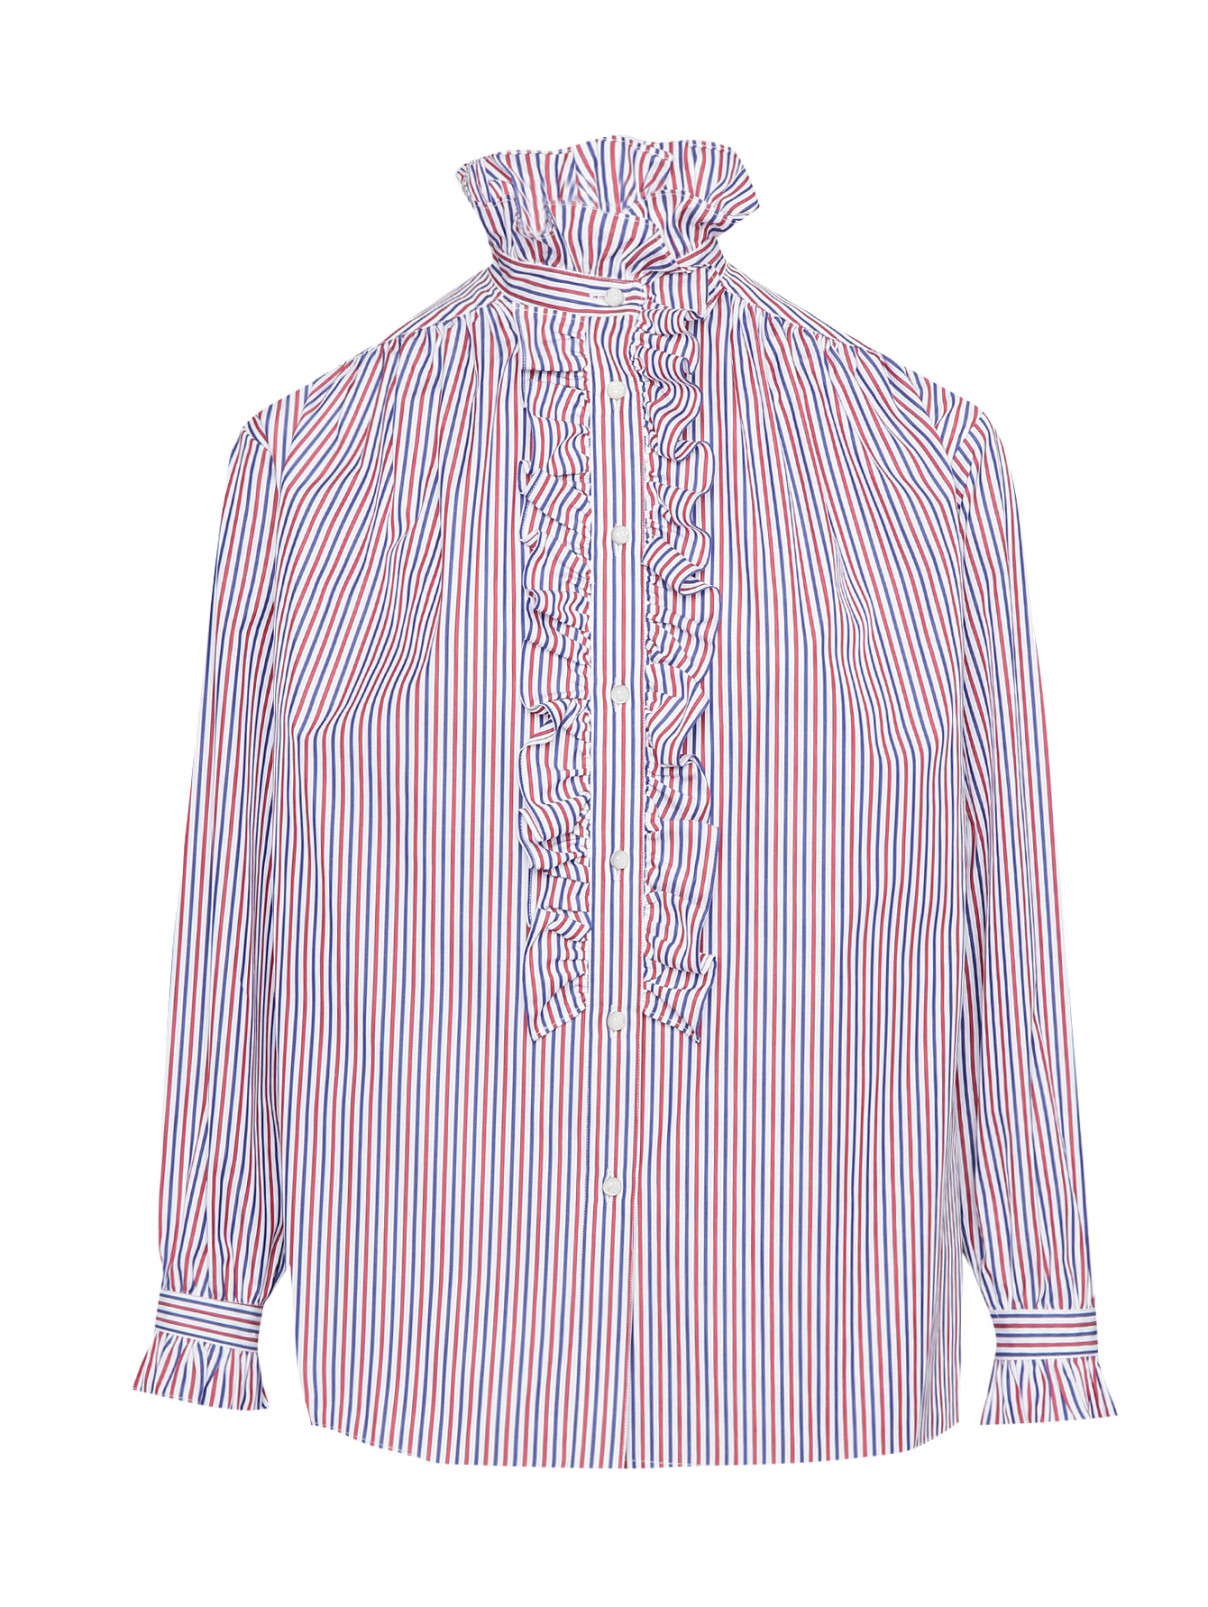 Рубашка из хлопка в полоску Etro  –  Общий вид  – Цвет:  Узор